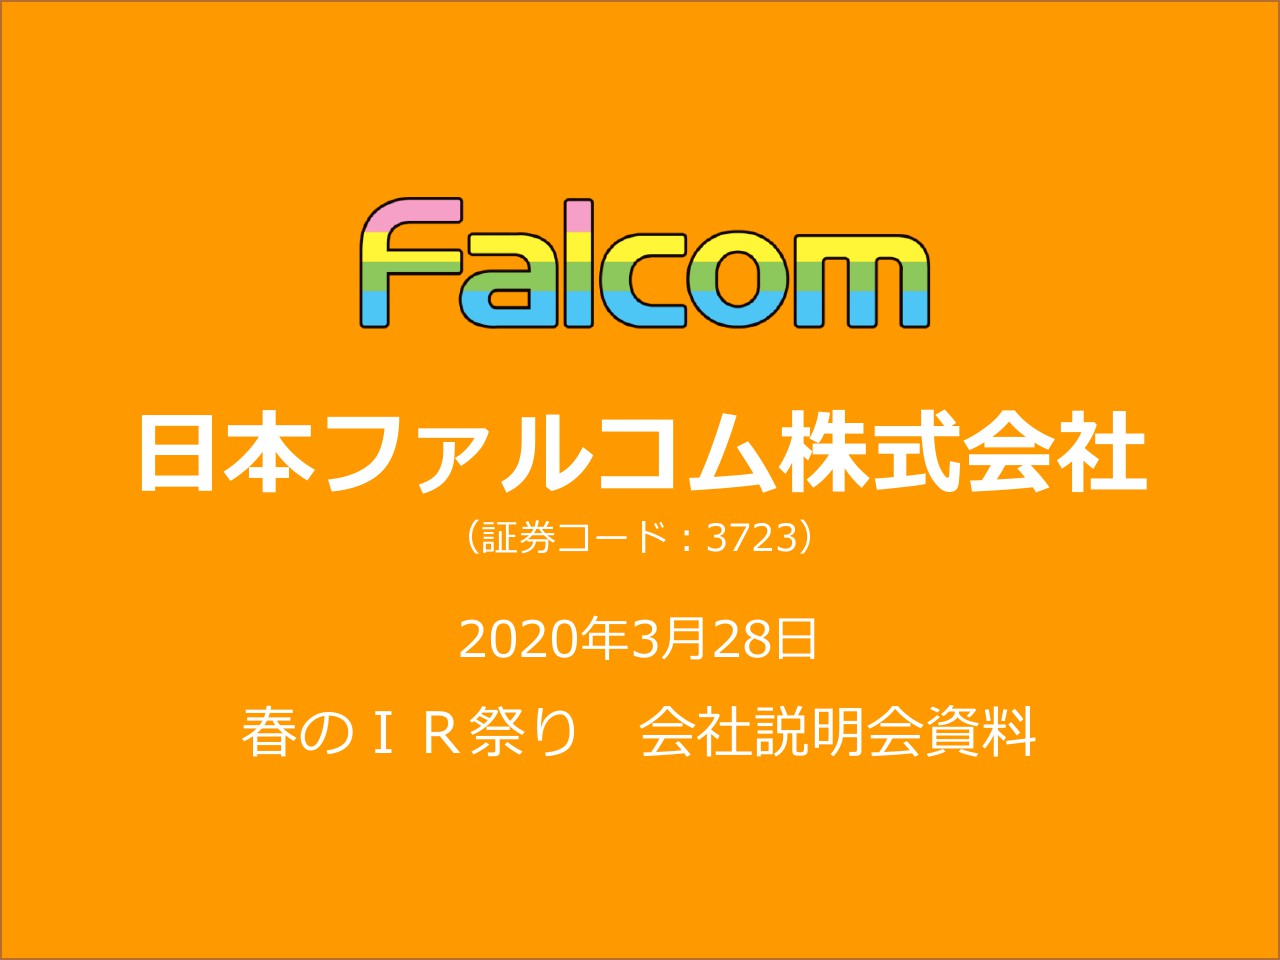 日本ファルコム、人気シリーズによる安定収益を基盤に、マルチ展開や新規IP創出にも注力